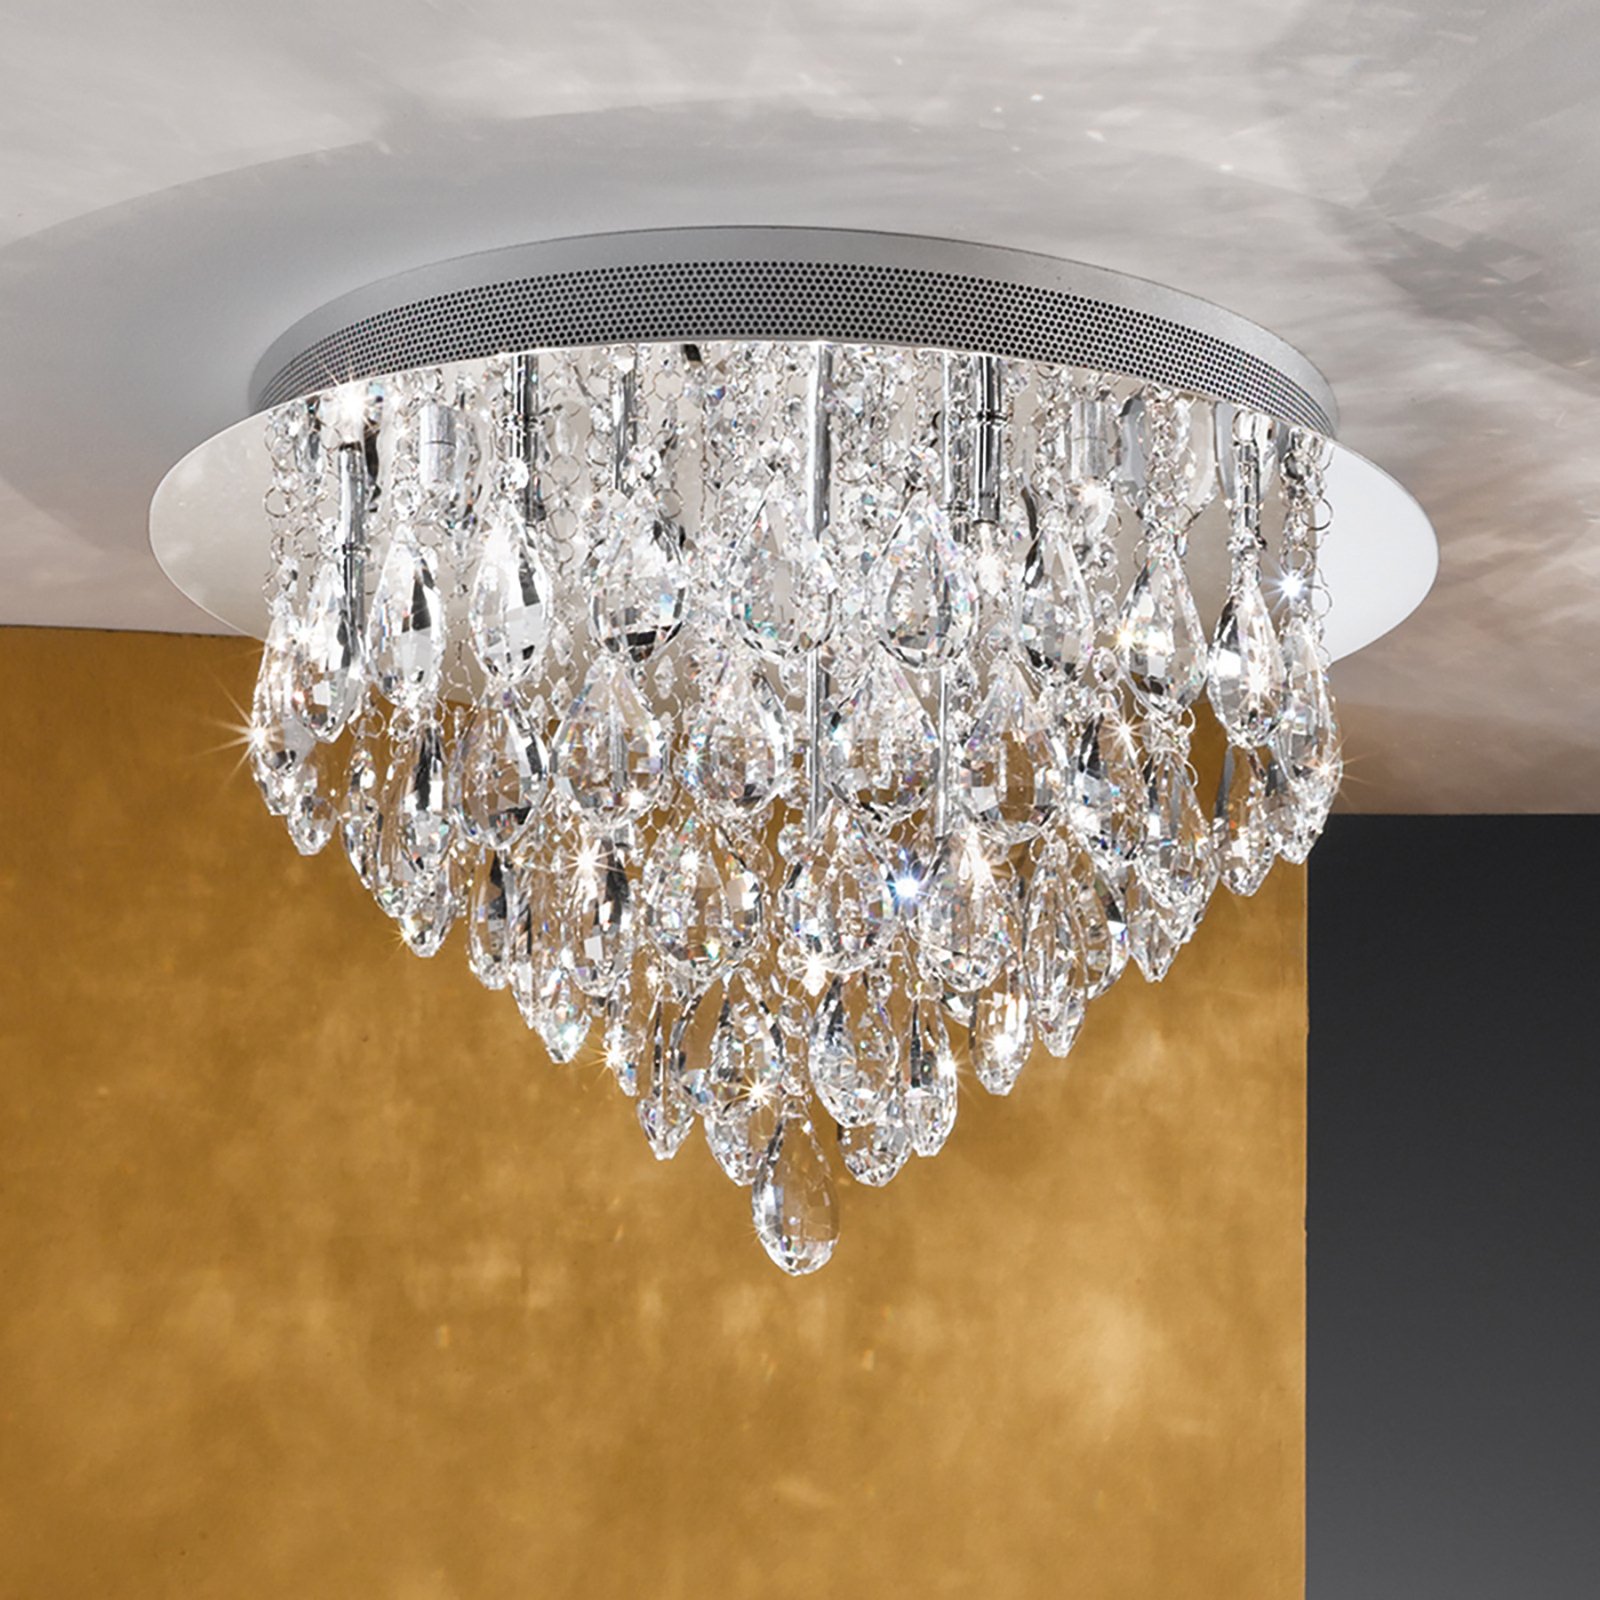 Celeste ceiling lamp with K9 crystals, Ø45cm chrome